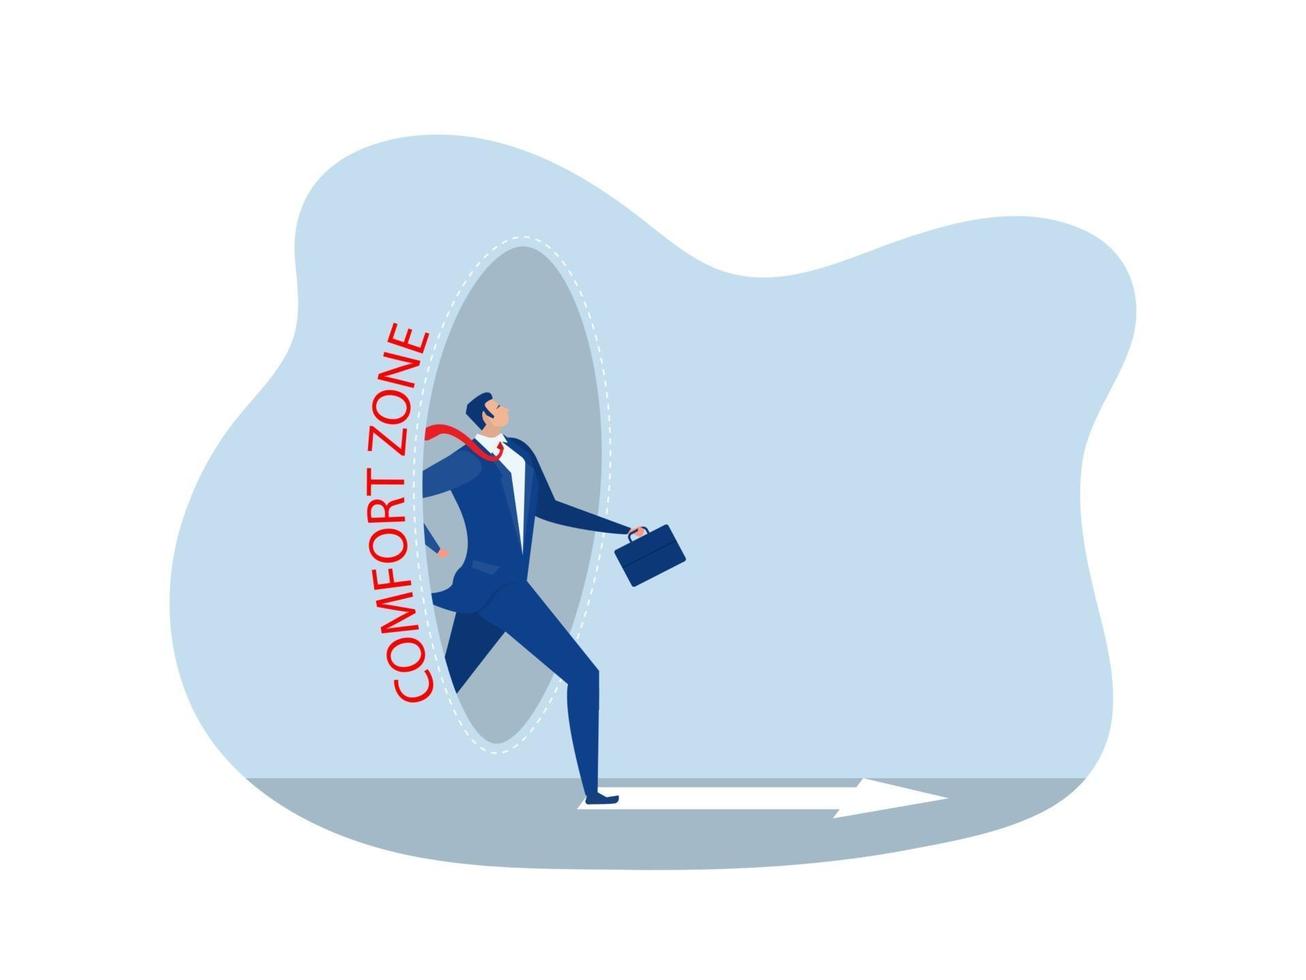 zakenman stap uit de comfortcirkel voor nieuw succes. comfort zone concept vector illustrator